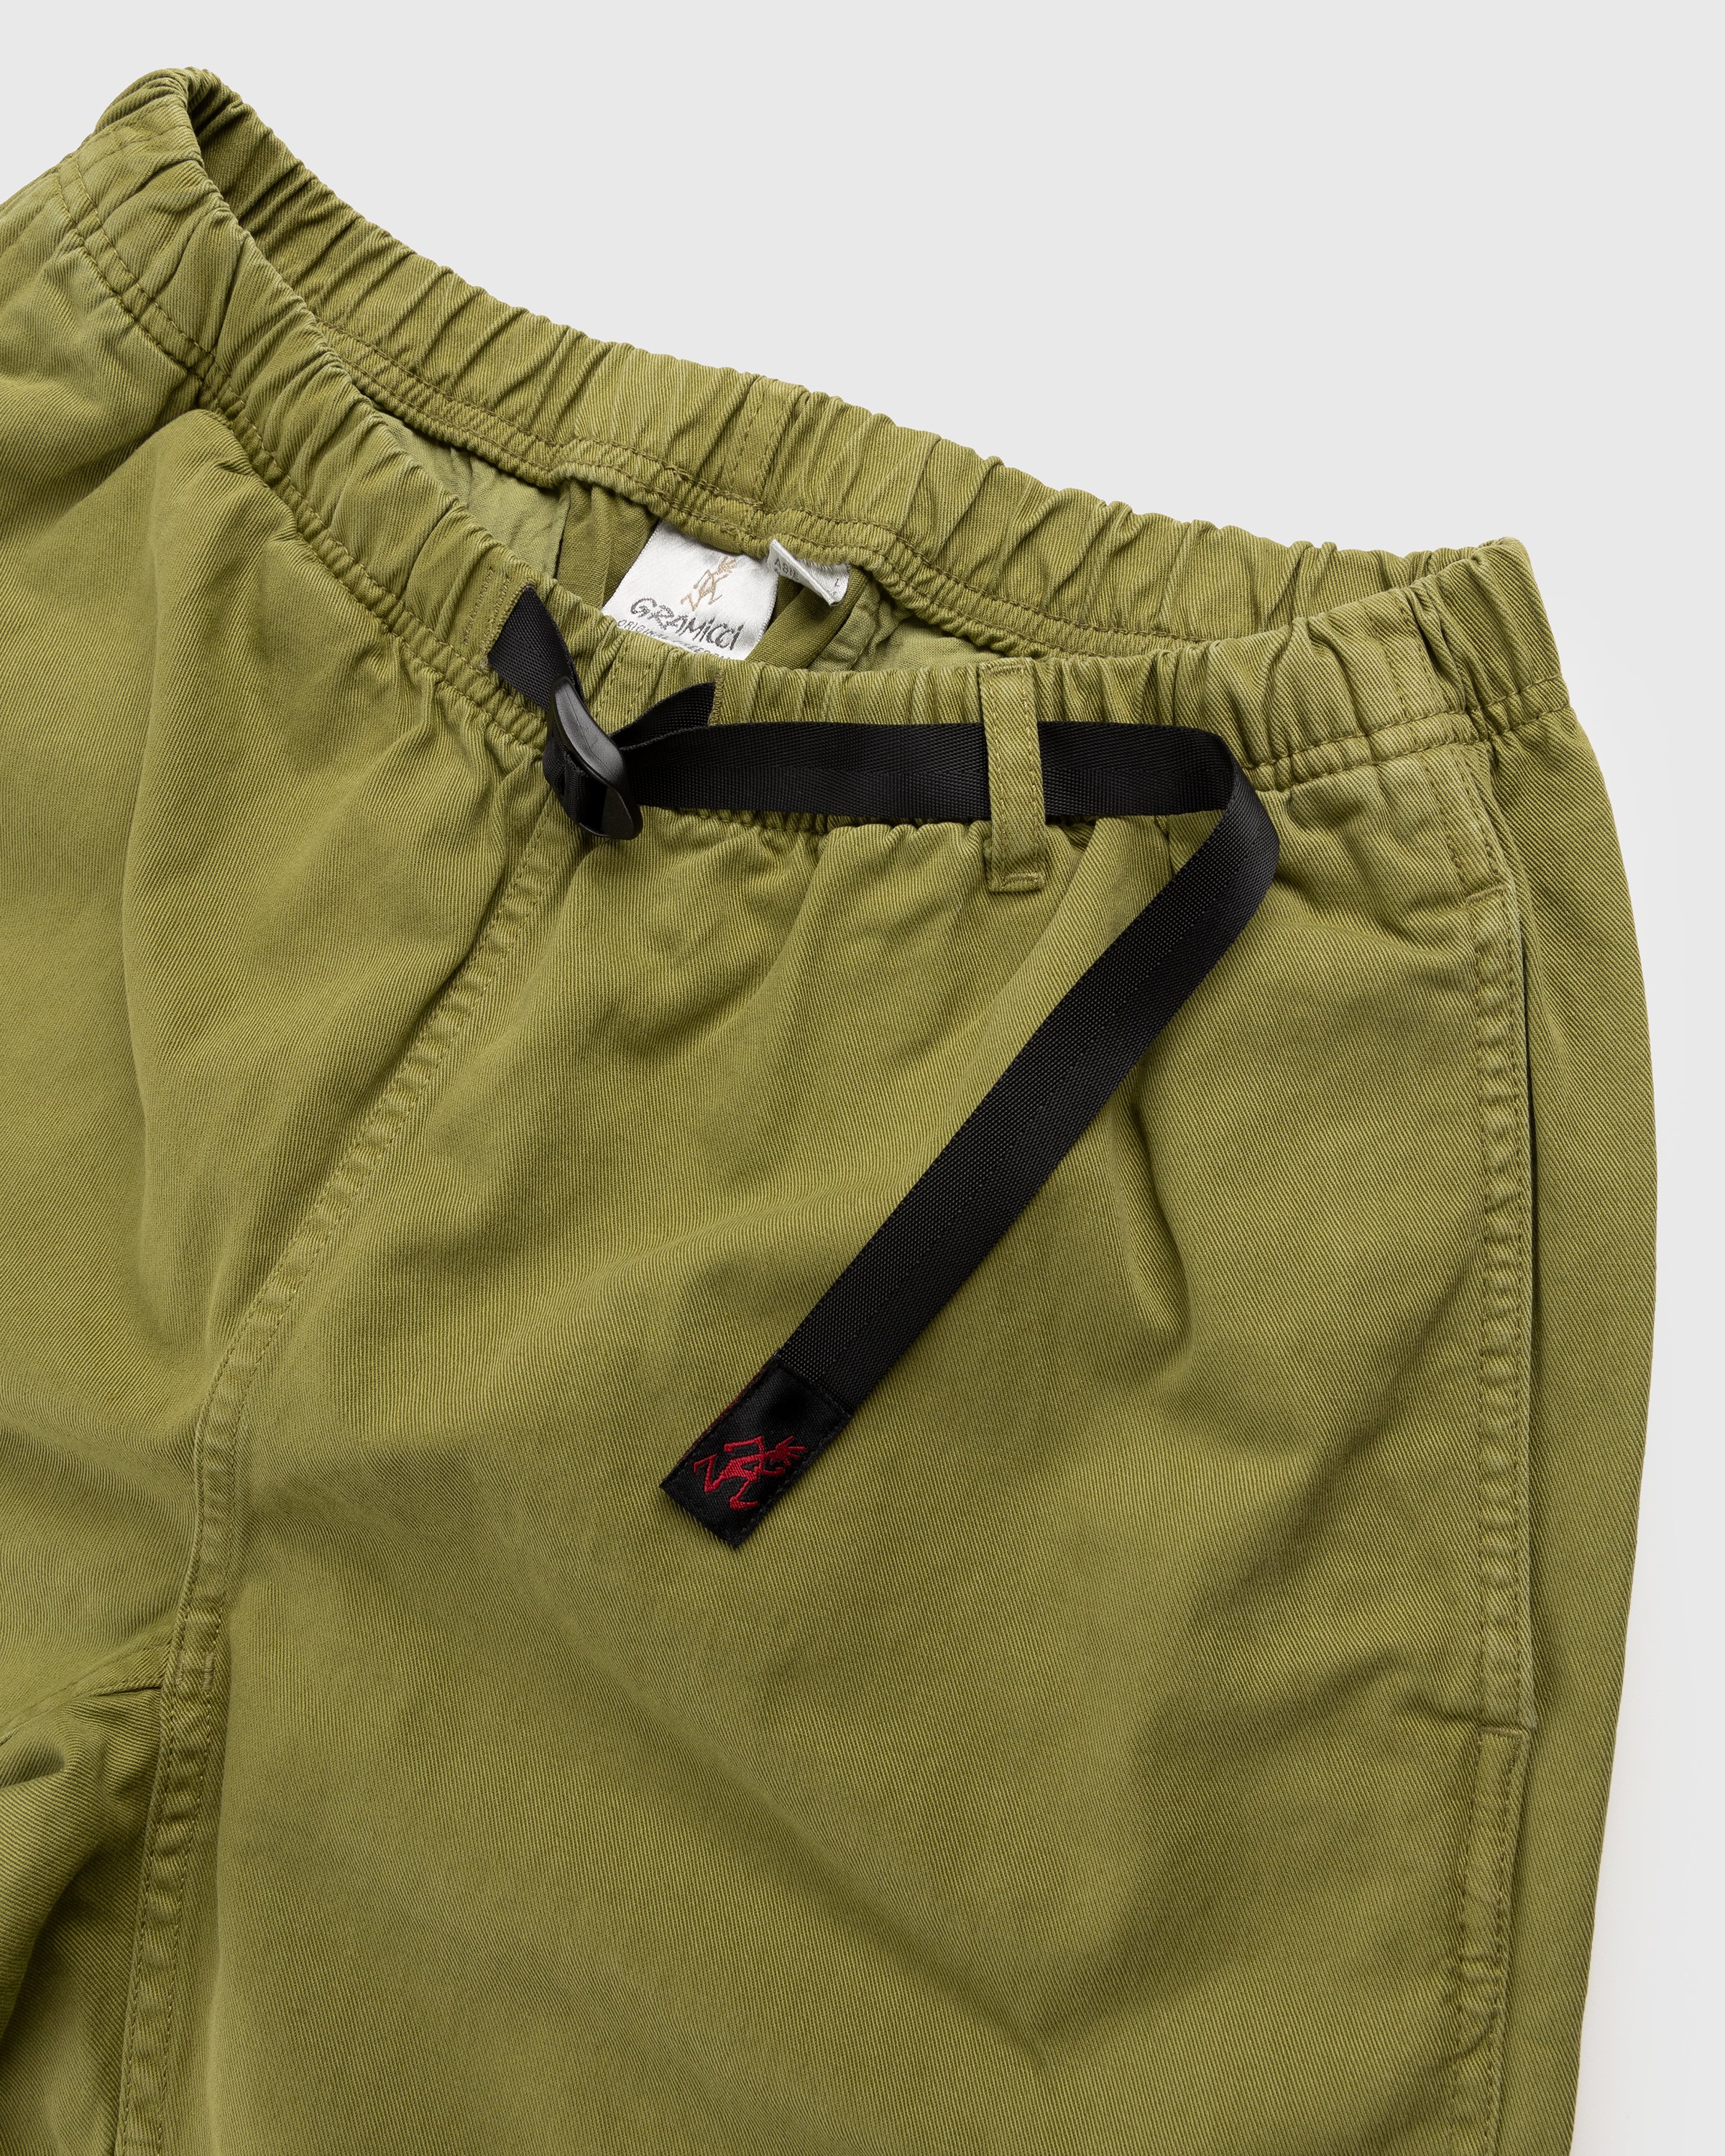 Gramicci - G-Shorts Moss - Clothing - Green - Image 4